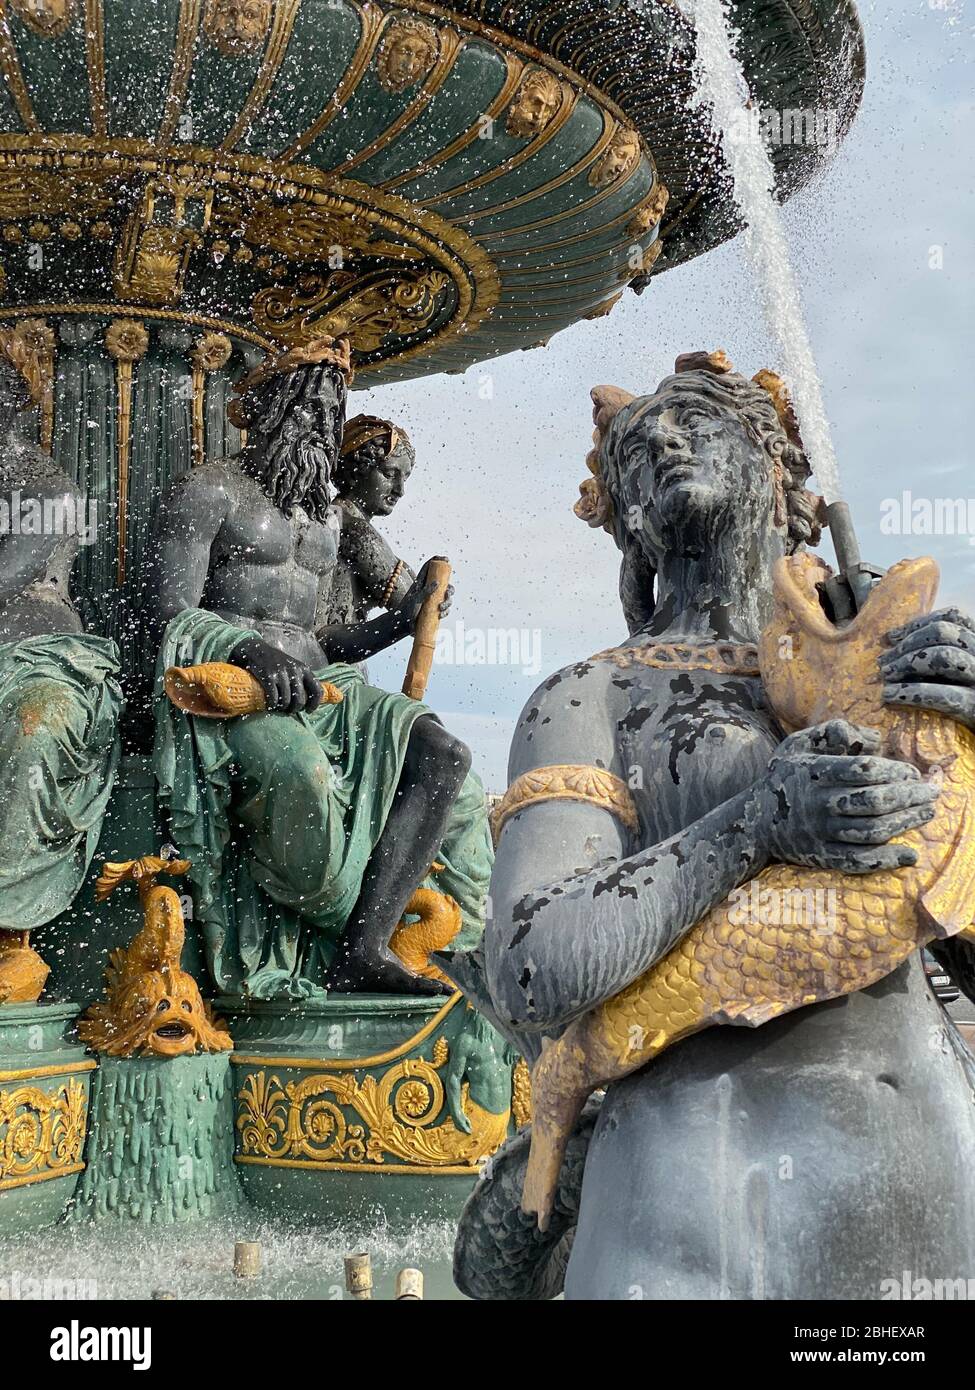 Fontana del dettaglio dei mari, Piazza della Concorde, Parigi, Francia - Fontaine des mers, Place de la Concorde, Parigi Foto Stock